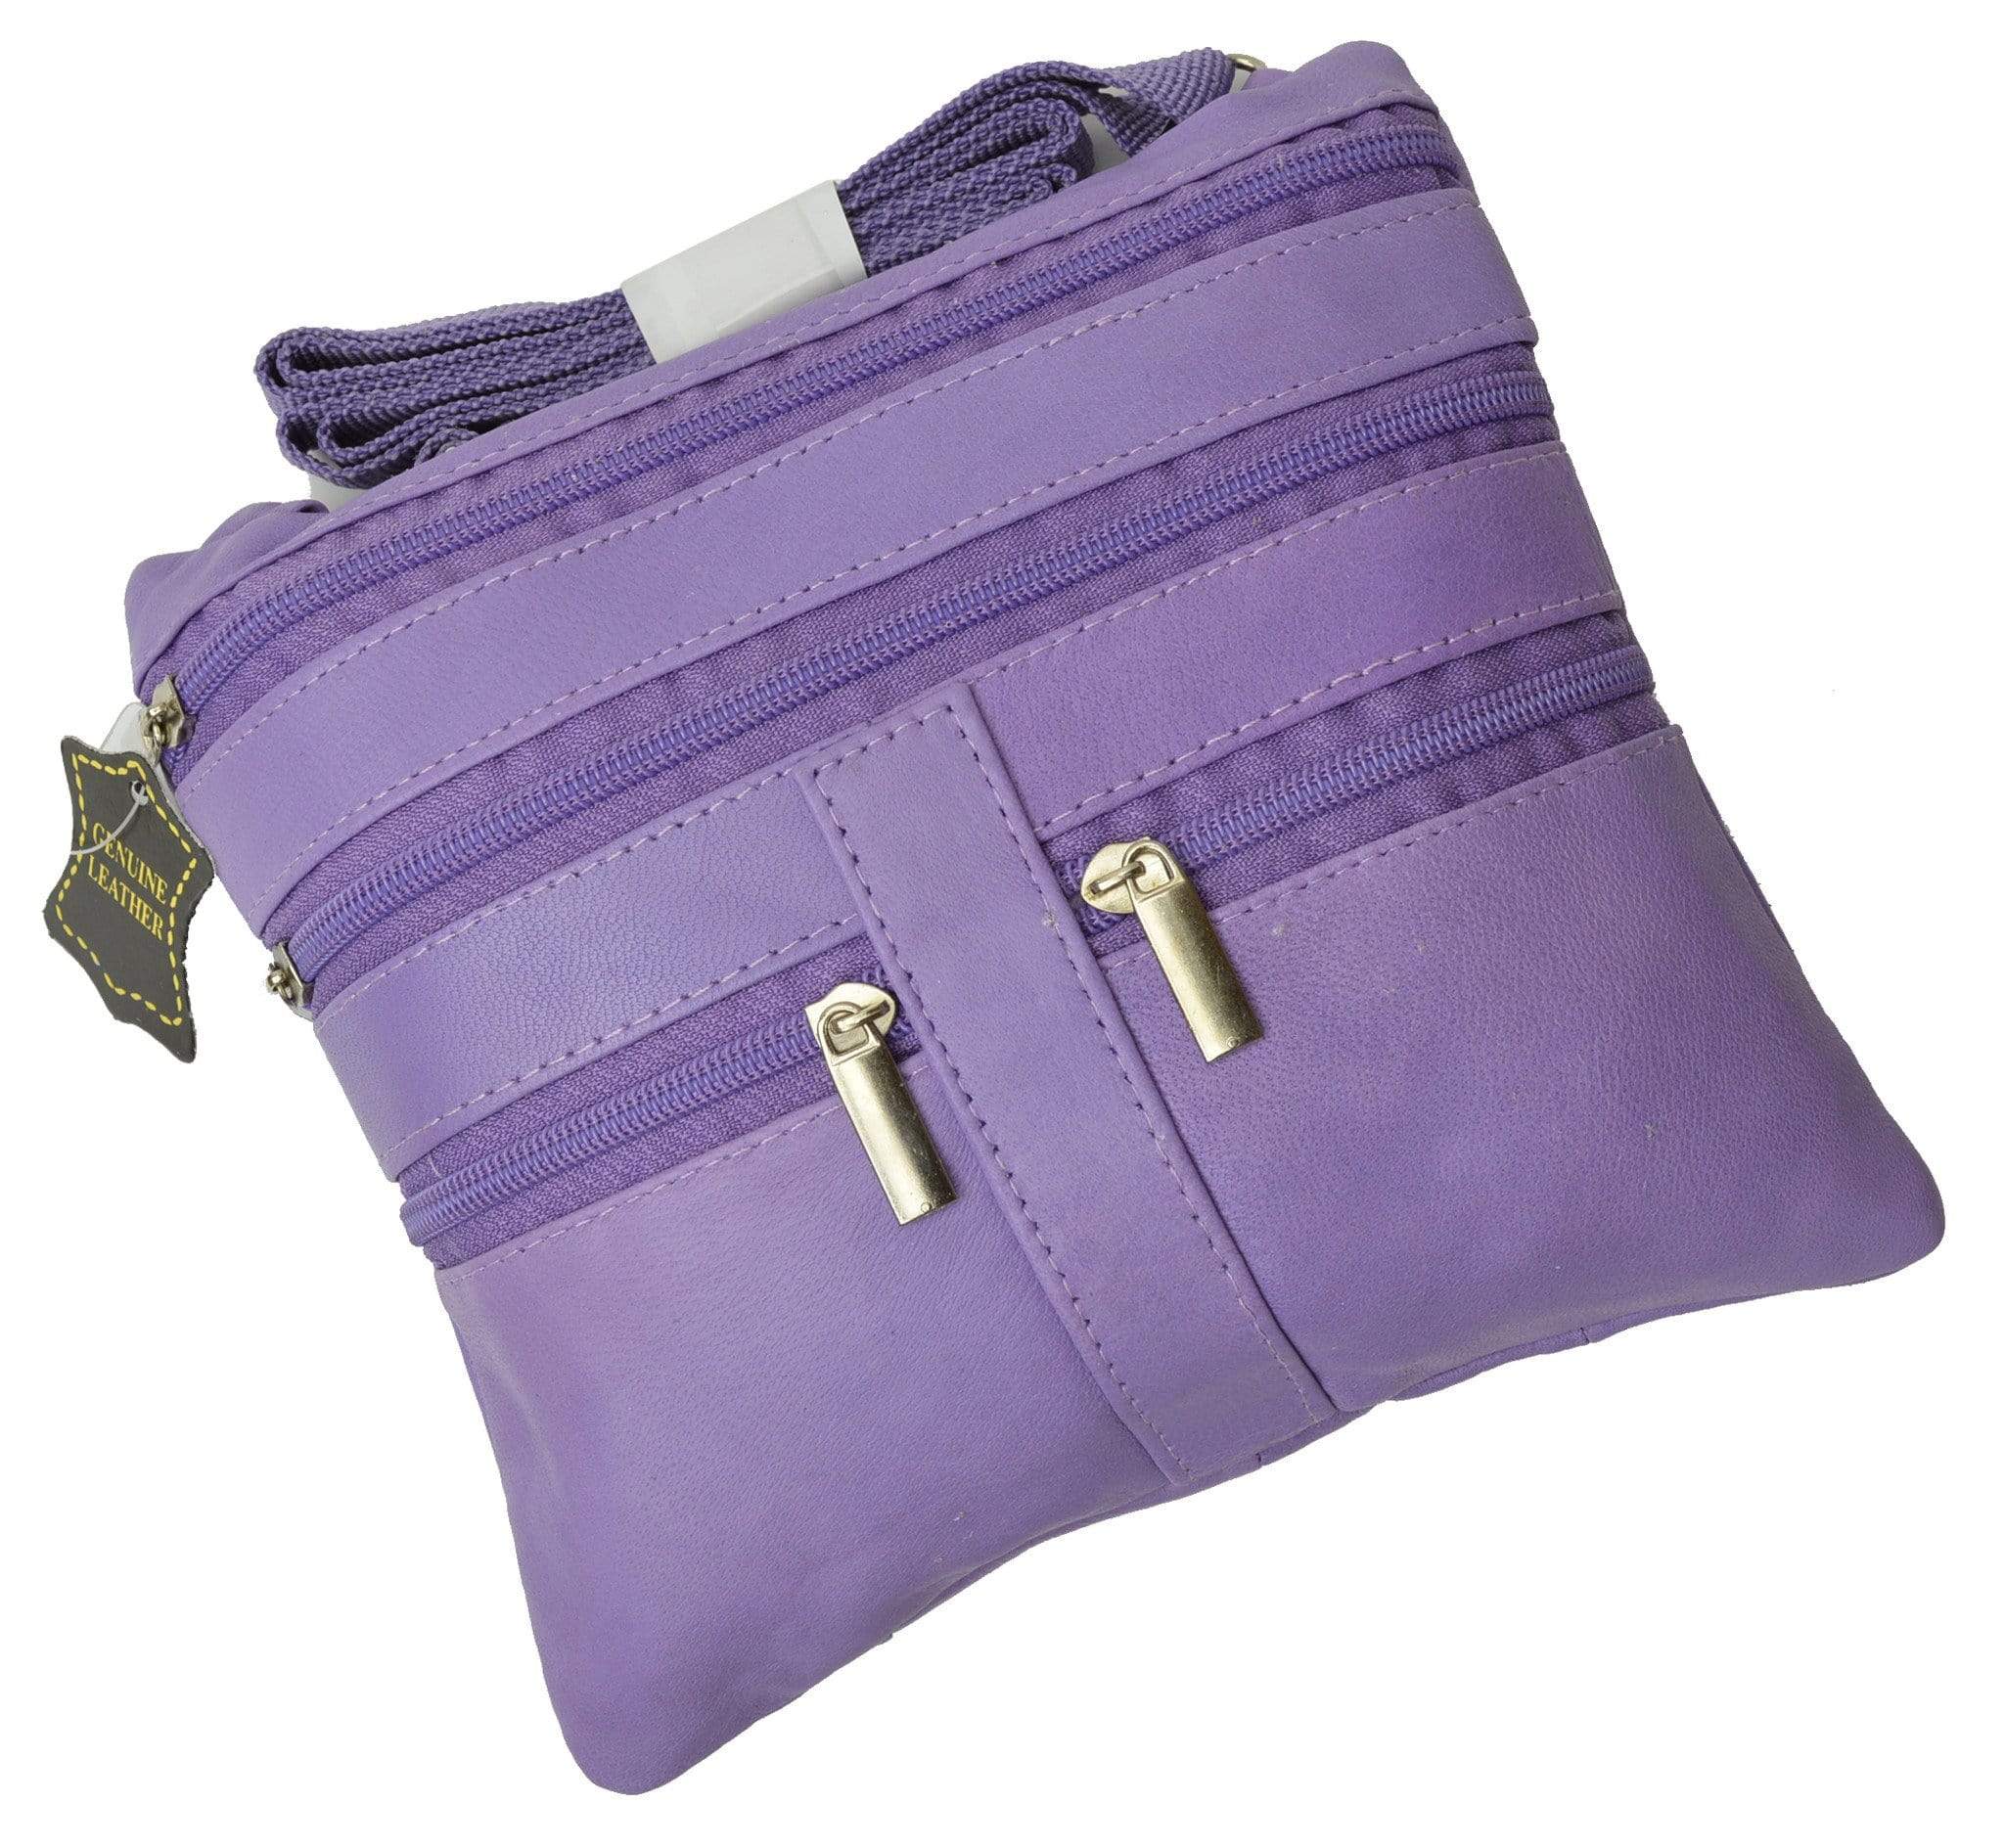 Genuine Soft Leather Cross Body Bag Purse Shoulder Bag 5 Pocket Organi - menswallet